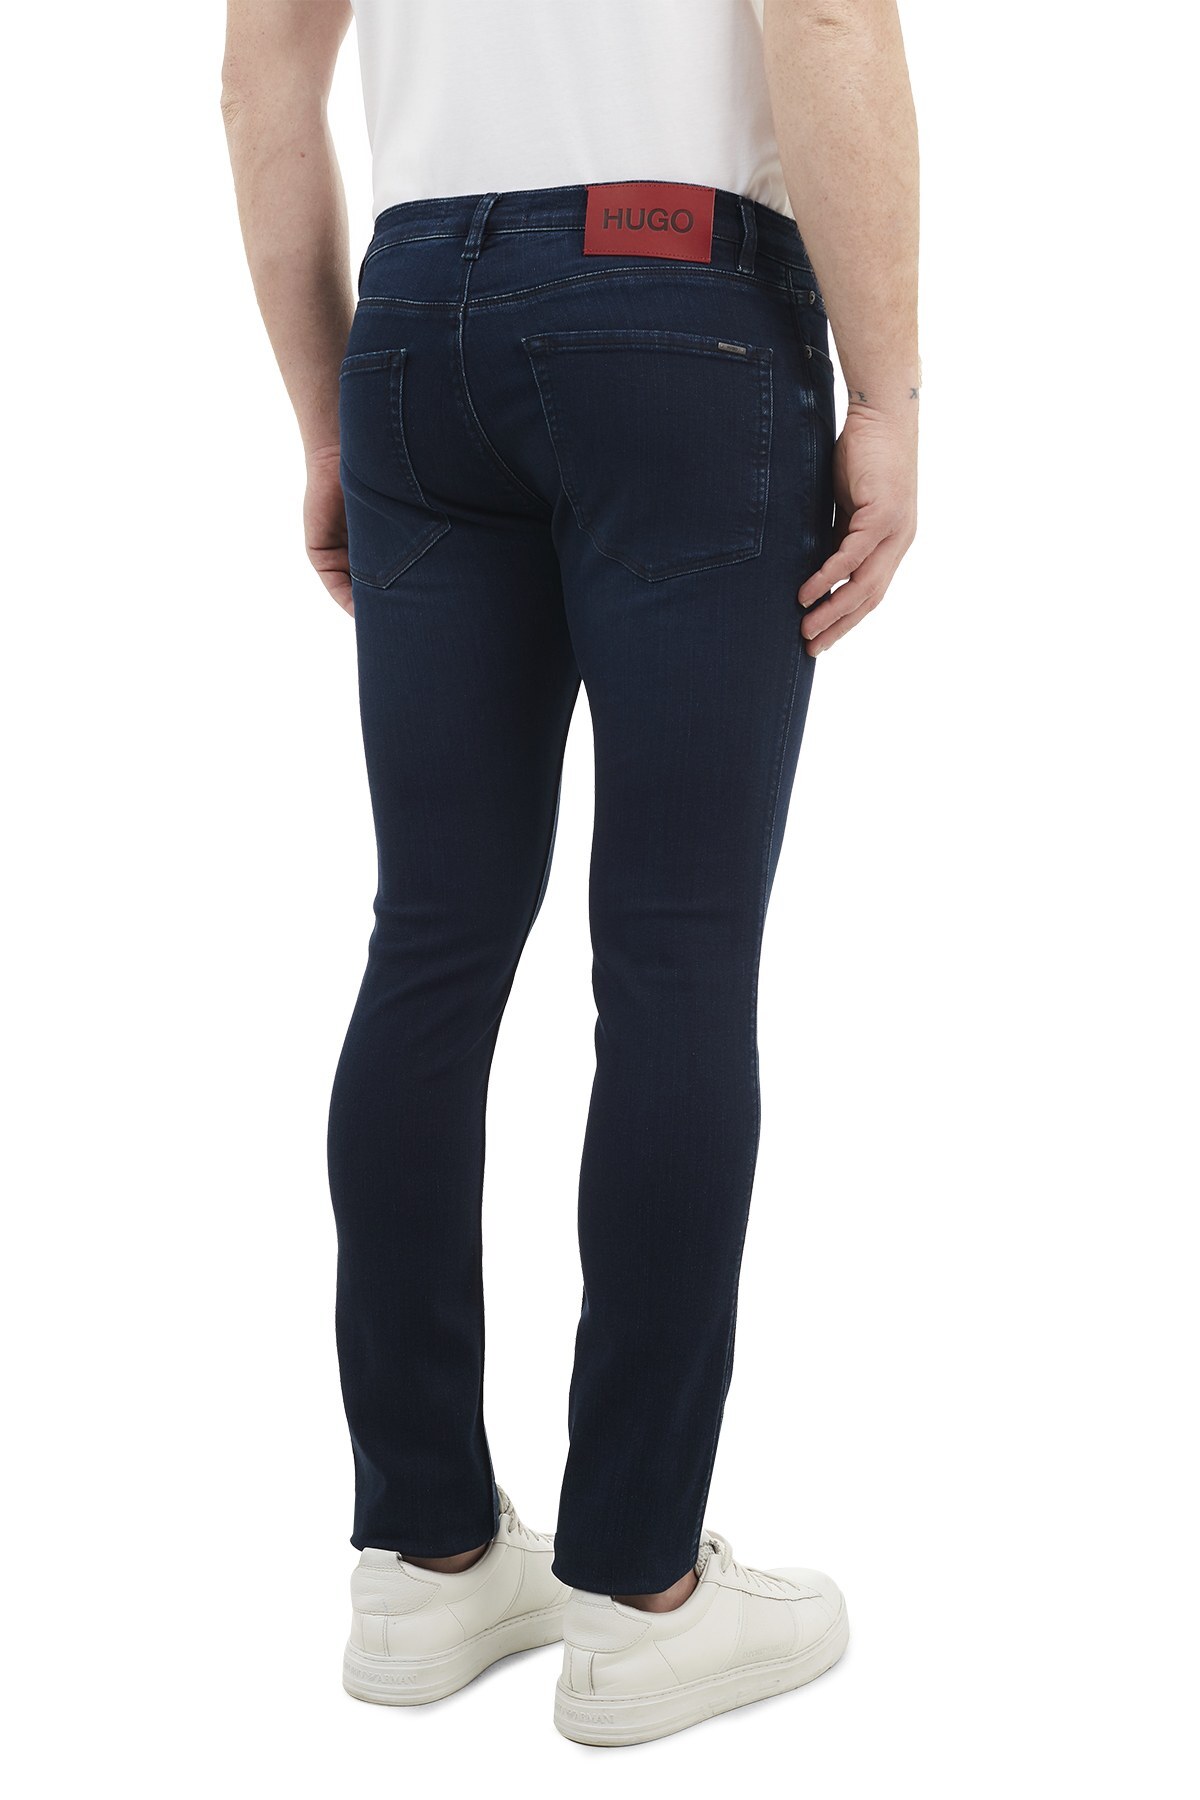 Hugo Boss Skinny Fit Pamuklu Jeans Erkek Kot Pantolon 50444672 405 LACİVERT